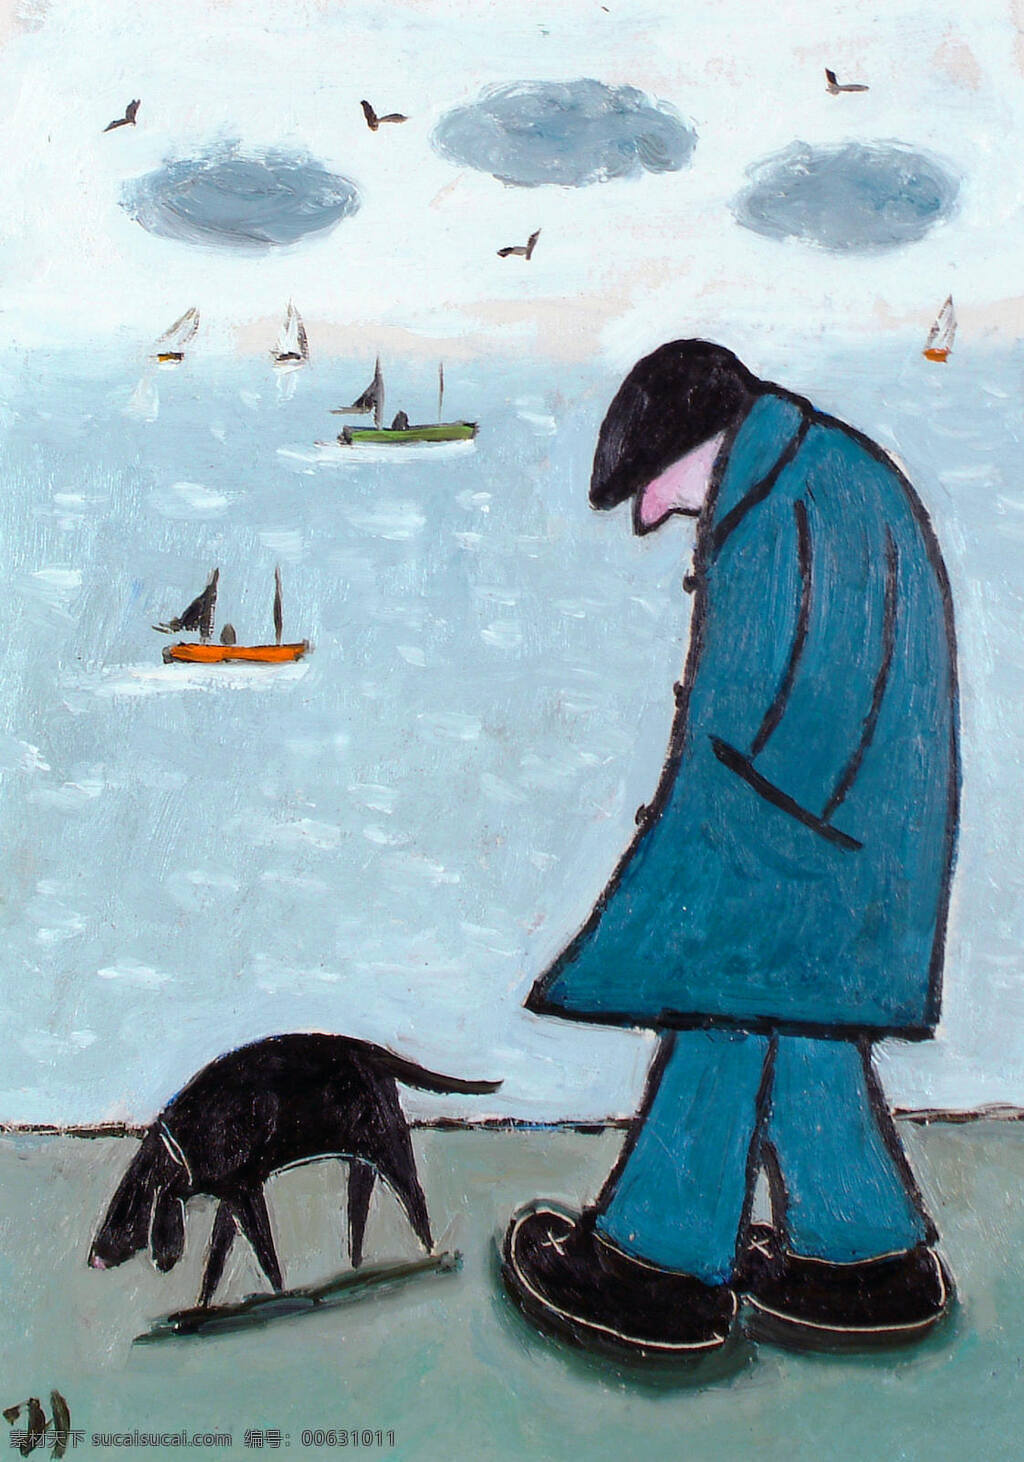 乔吉 尔克 里斯特 作品 英国画家 海岸 大海 船只 水鸟 岸边 一男子 等待 狗 20世纪油画 油画 文化艺术 绘画书法